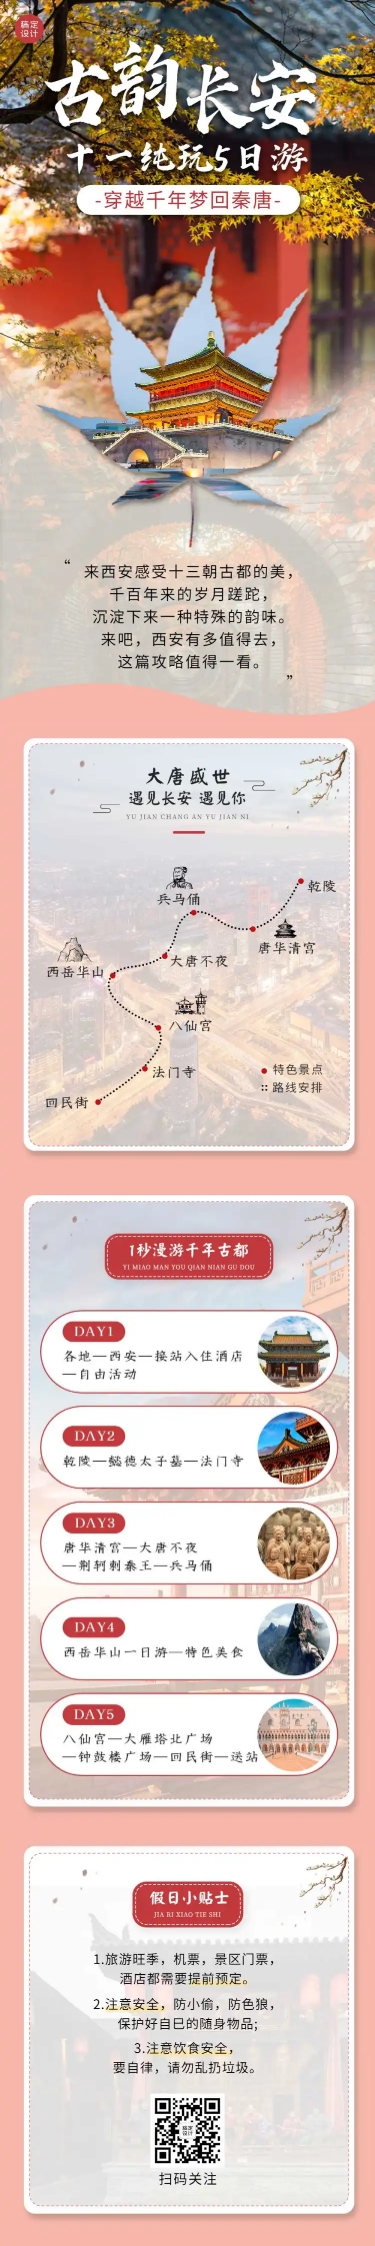 国庆十一旅游路线攻略中国风长图预览效果